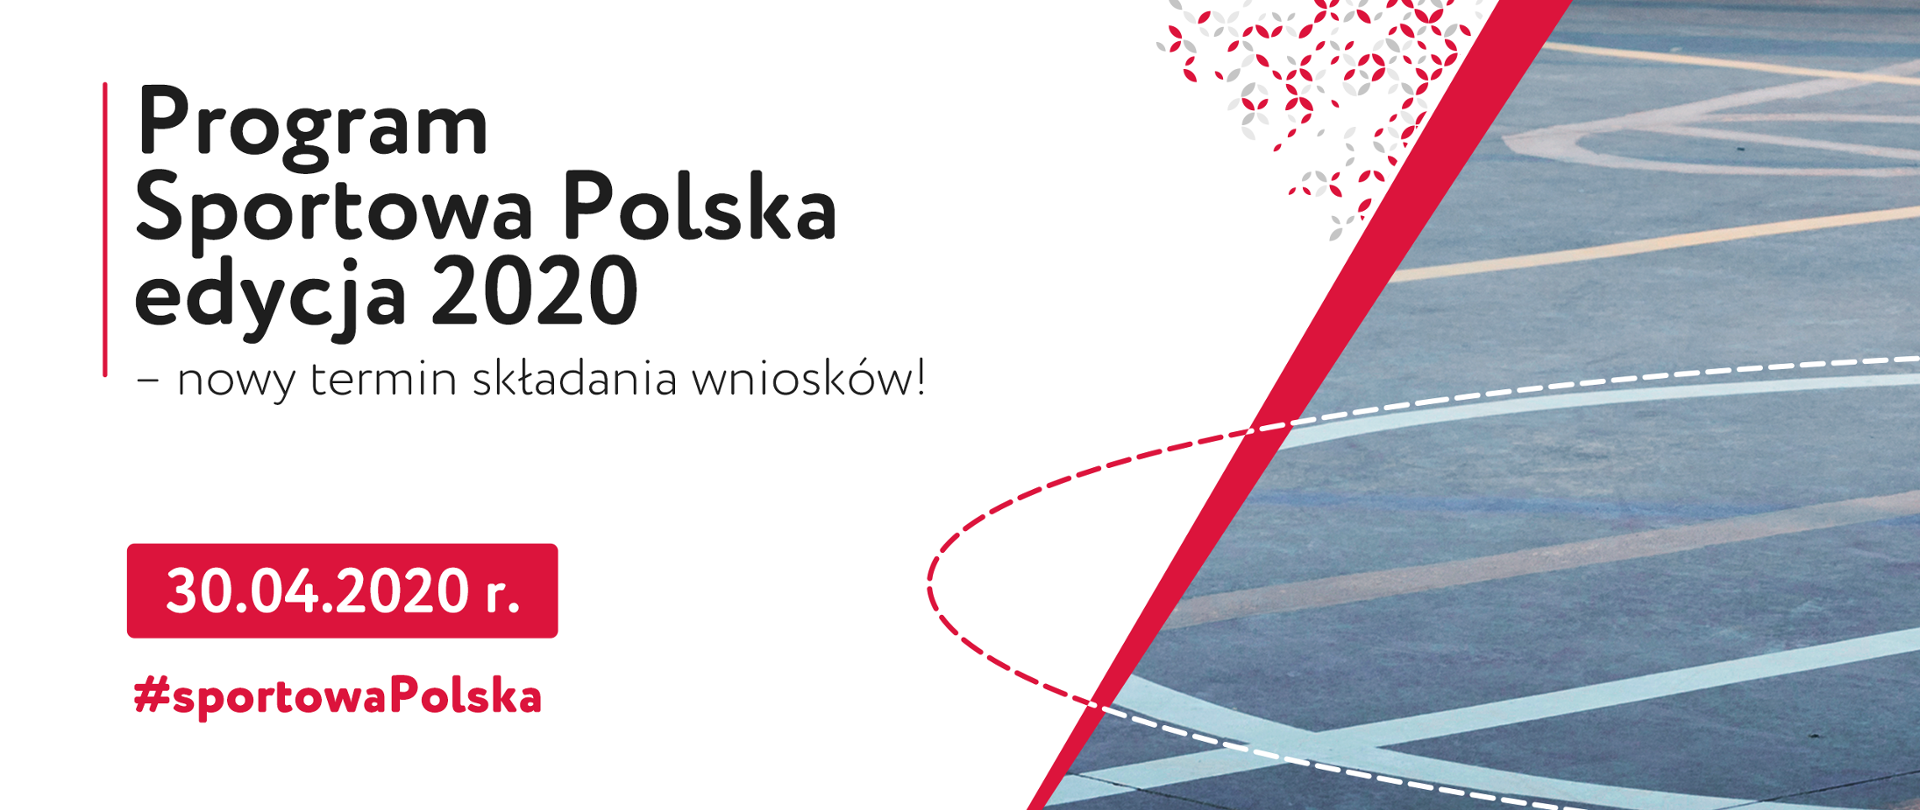 Napis Sportowa Polska - edycja 2020 wraz z datą 30.04.2020 r., w tle fragment boiska do koszykówki